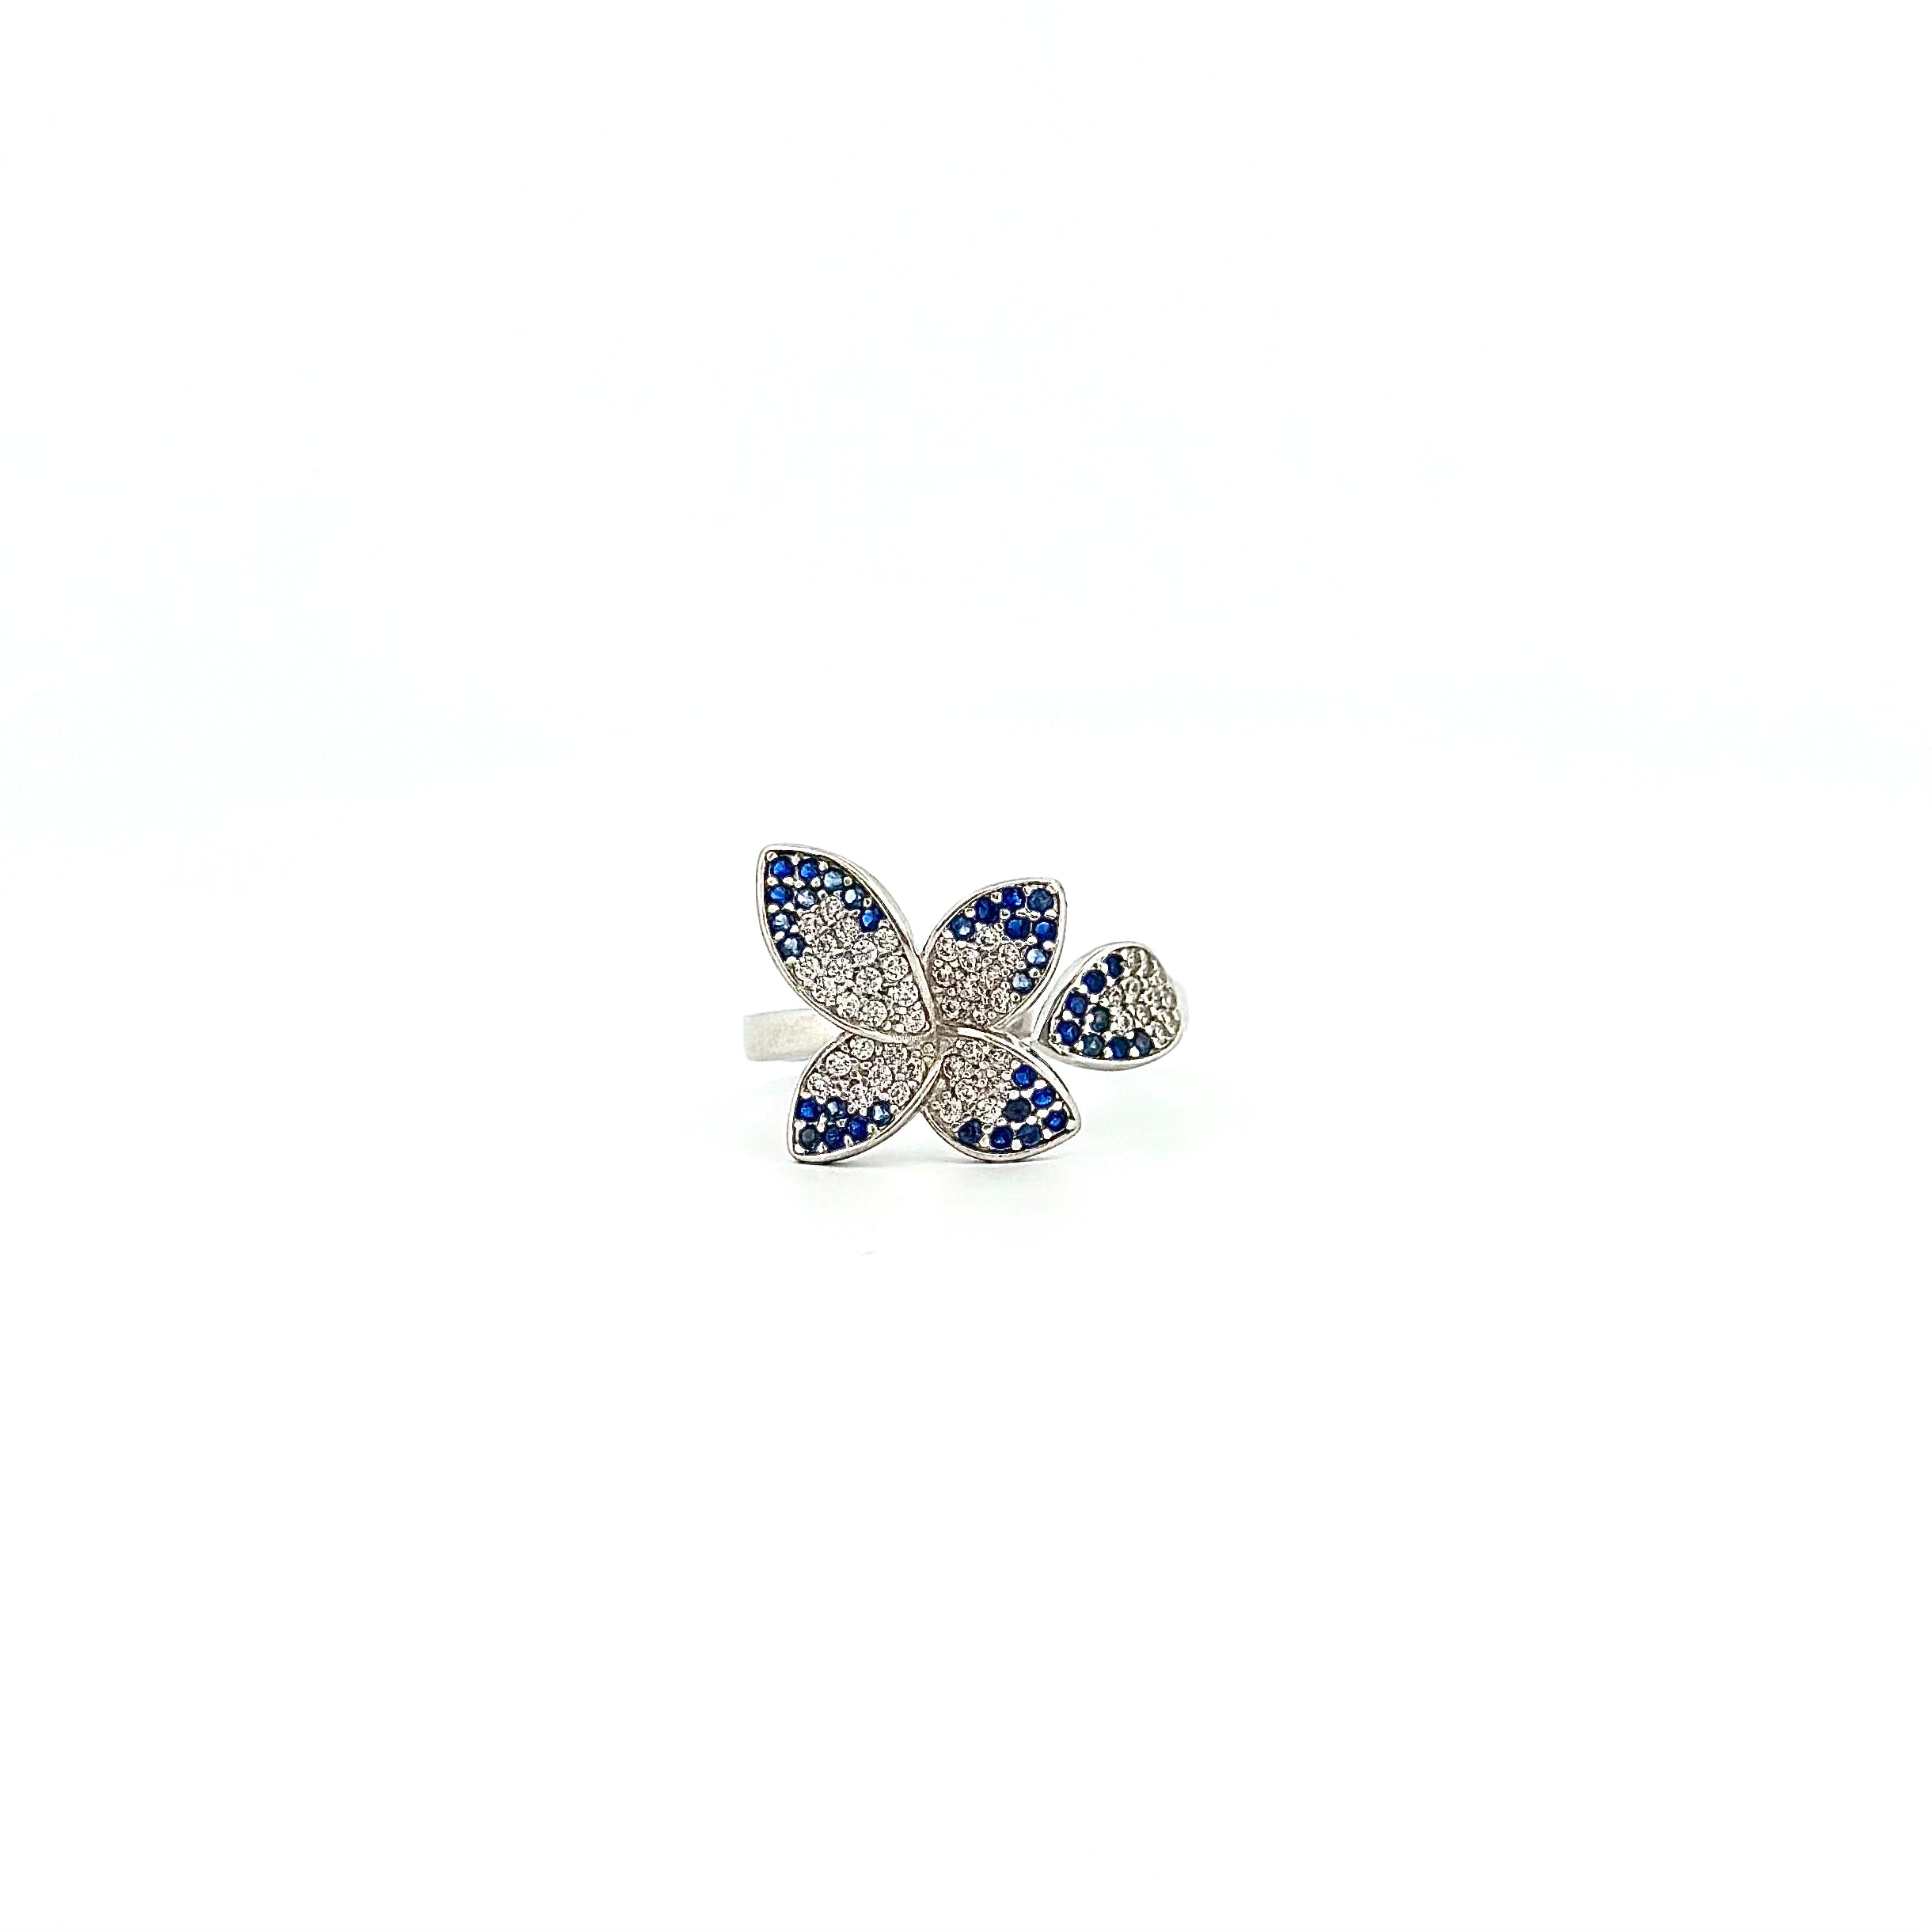 Modrý prsten s motýlem